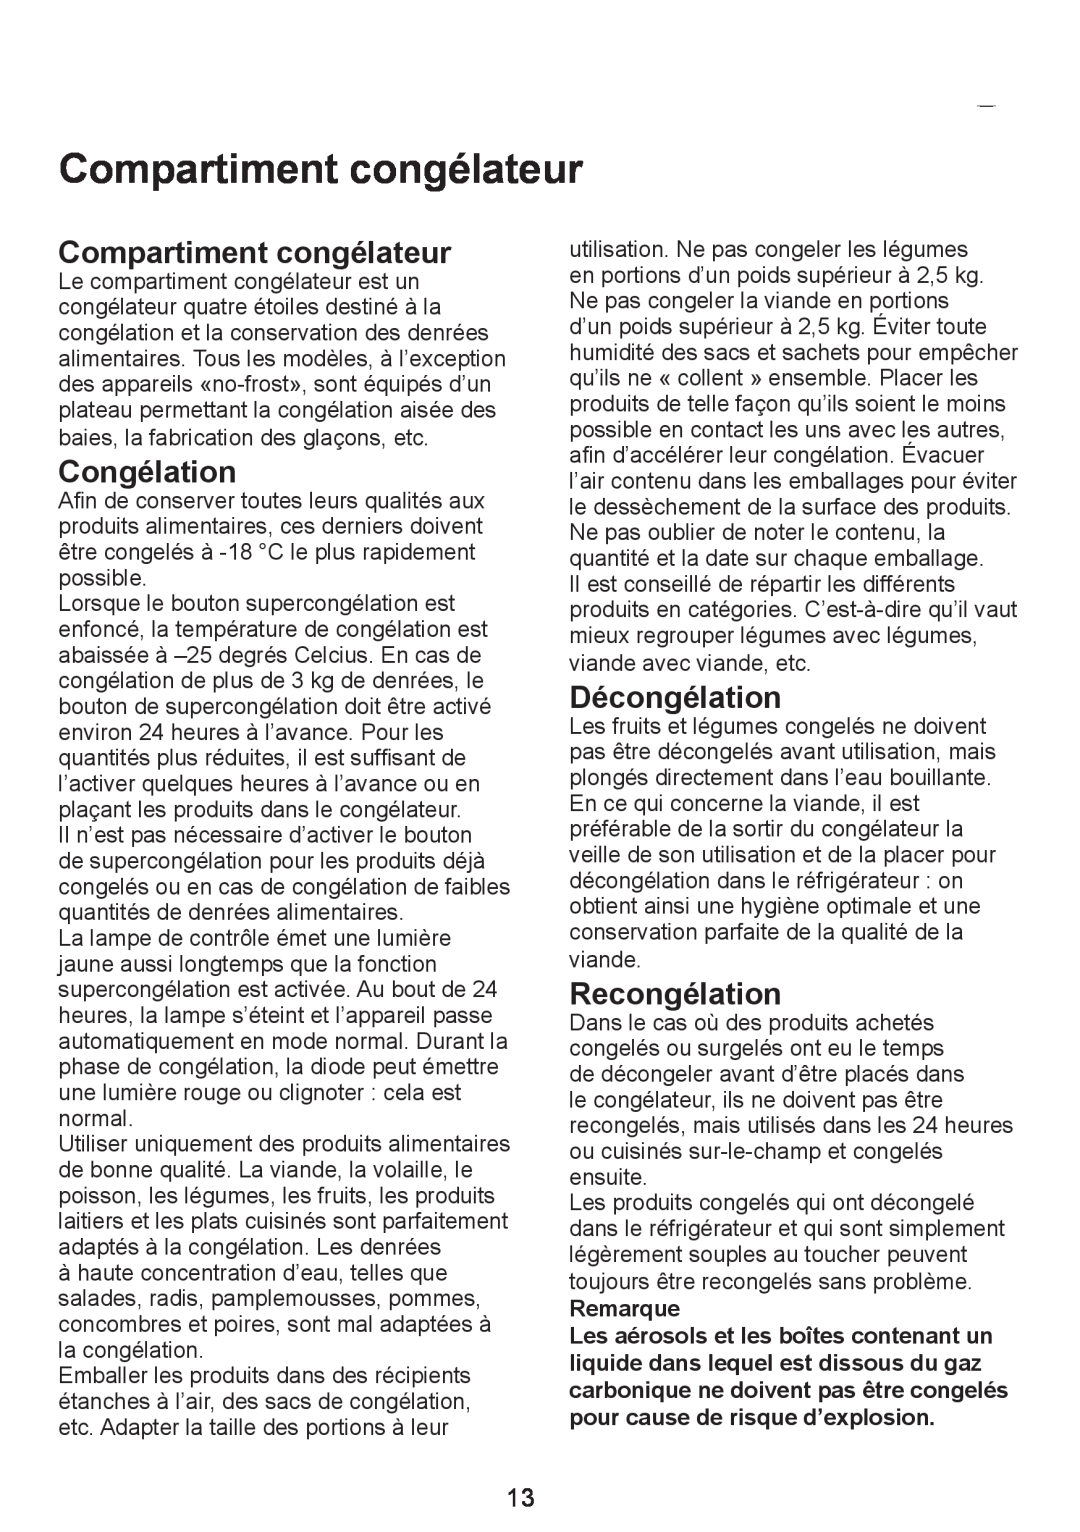 Smeg FC310AL manual Compartiment congélateur, Congélation, Décongélation, Recongélation, Remarque 